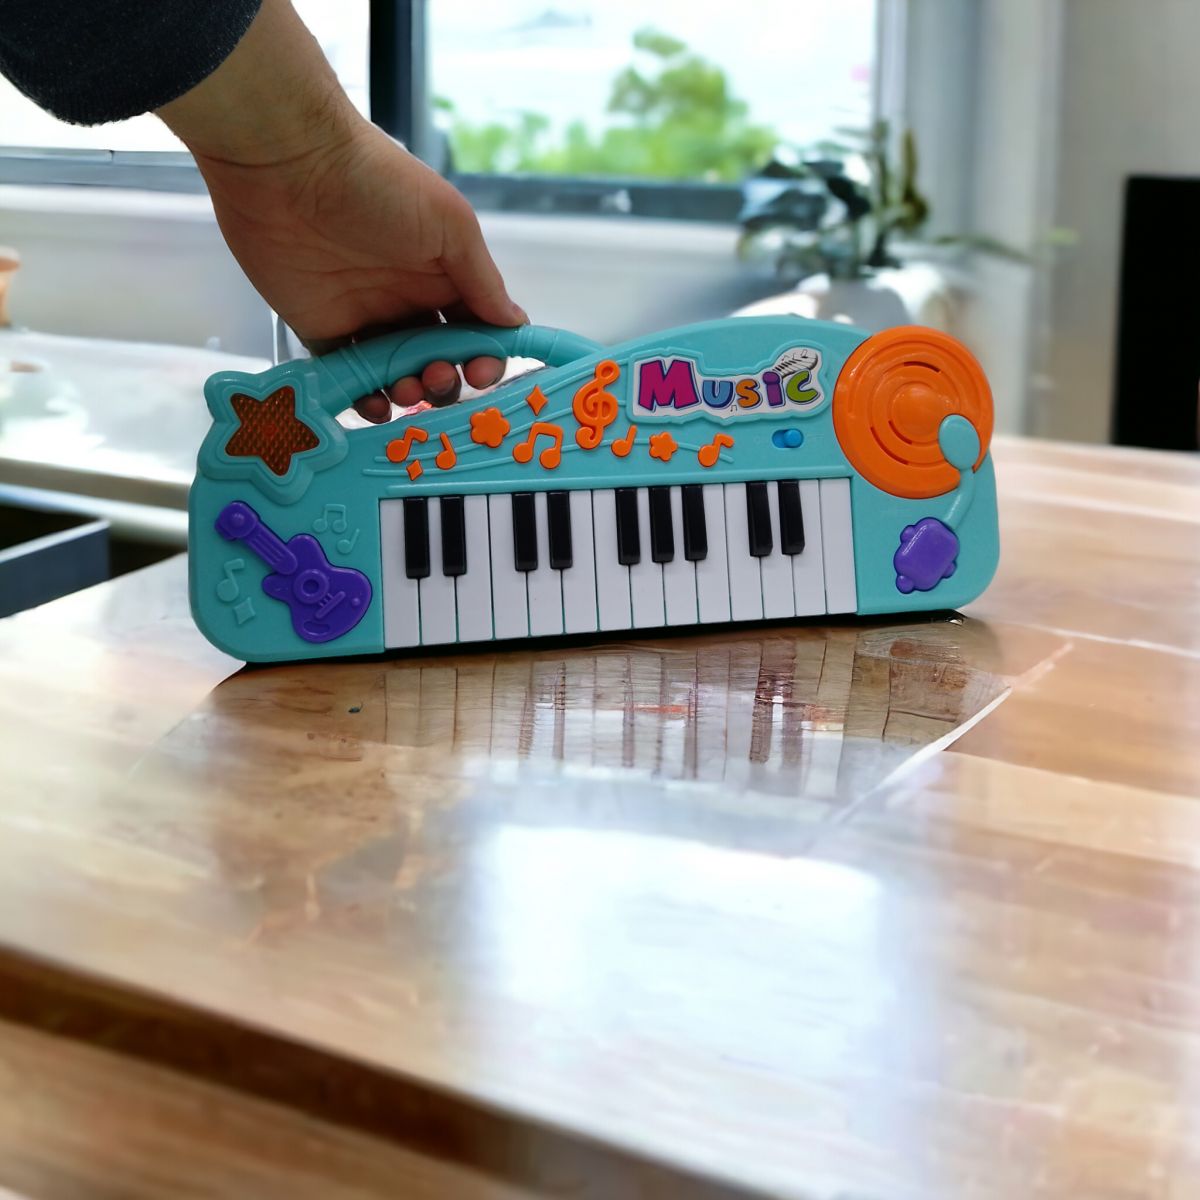 Дитяче піаніно "Electronic Organ" (блакитний)